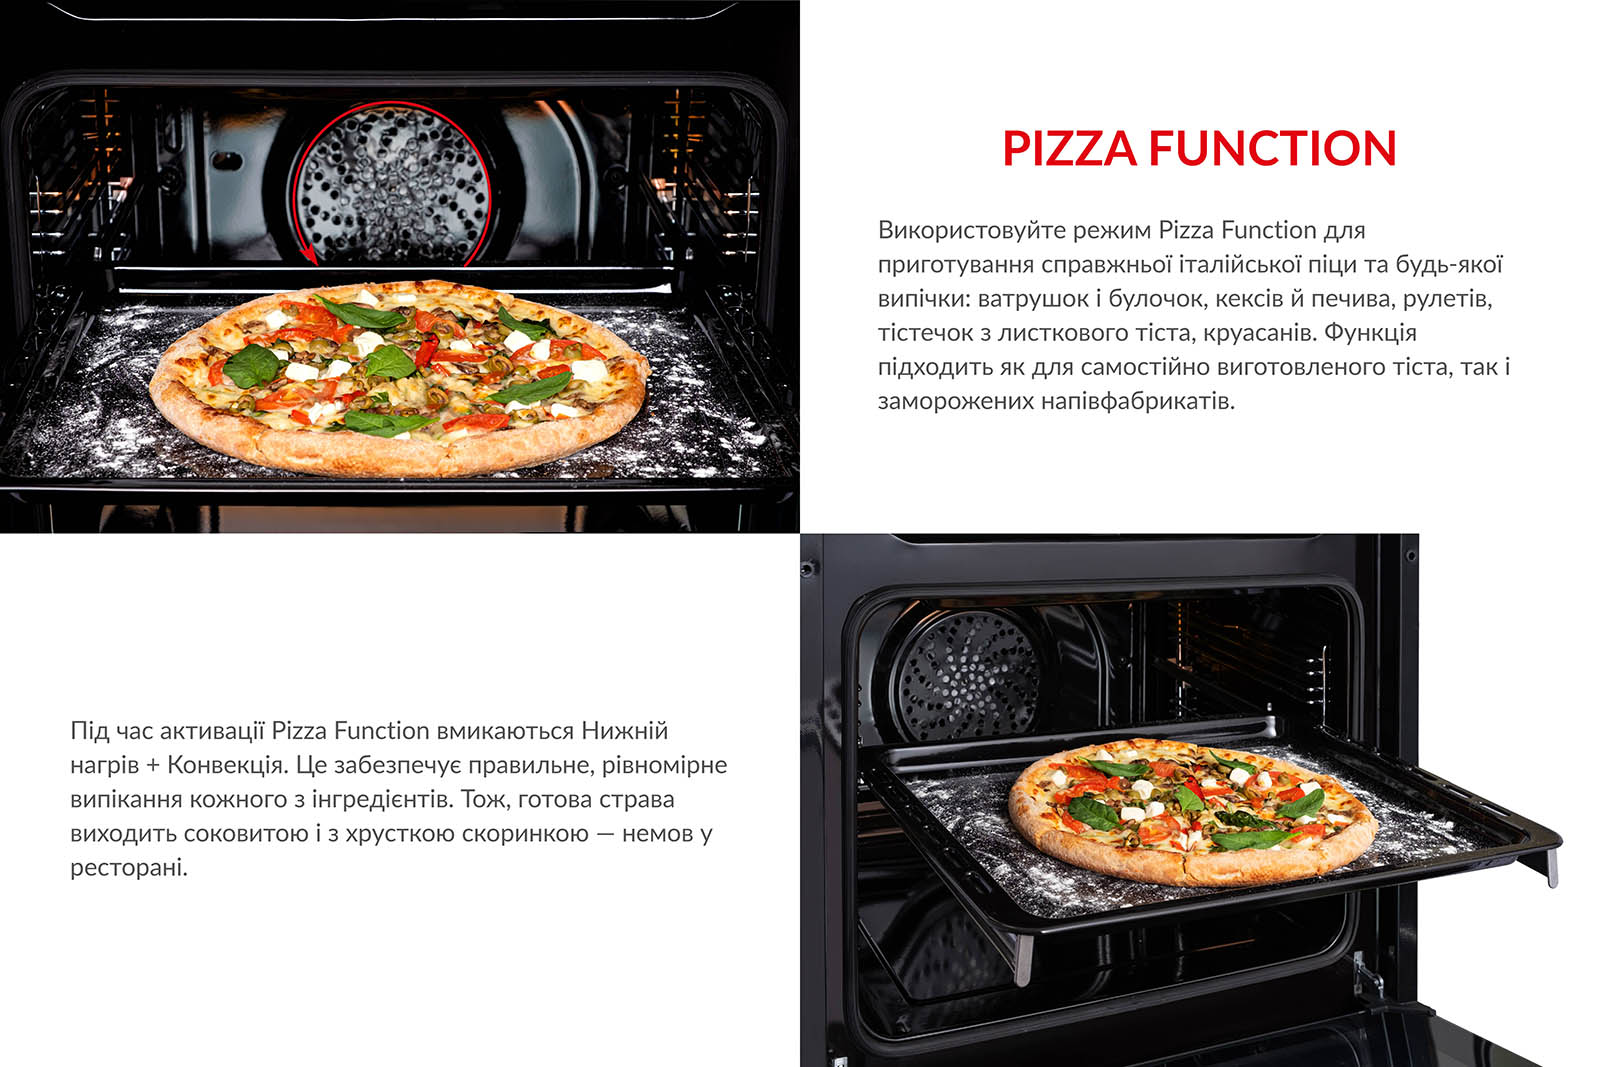 Використовуйте режим Pizza Function для приготування справжньої італійської піци та будь-якої випічки: ватрушок і булочок, кексів й печива, рулетів, тістечок з листкового тіста, круасанів. Функція підходить як для самостійно виготовленого тіста, так і для заморожених напівфабрикатів. Під час активації Pizza Function вмикаються Нижній нагрів + Конвекція. Це забезпечує правильне і рівномірне випікання кожного з інгредієнтів. Тож, готова страва виходить соковитою і з хрусткою скоринкою, немов у ресторані